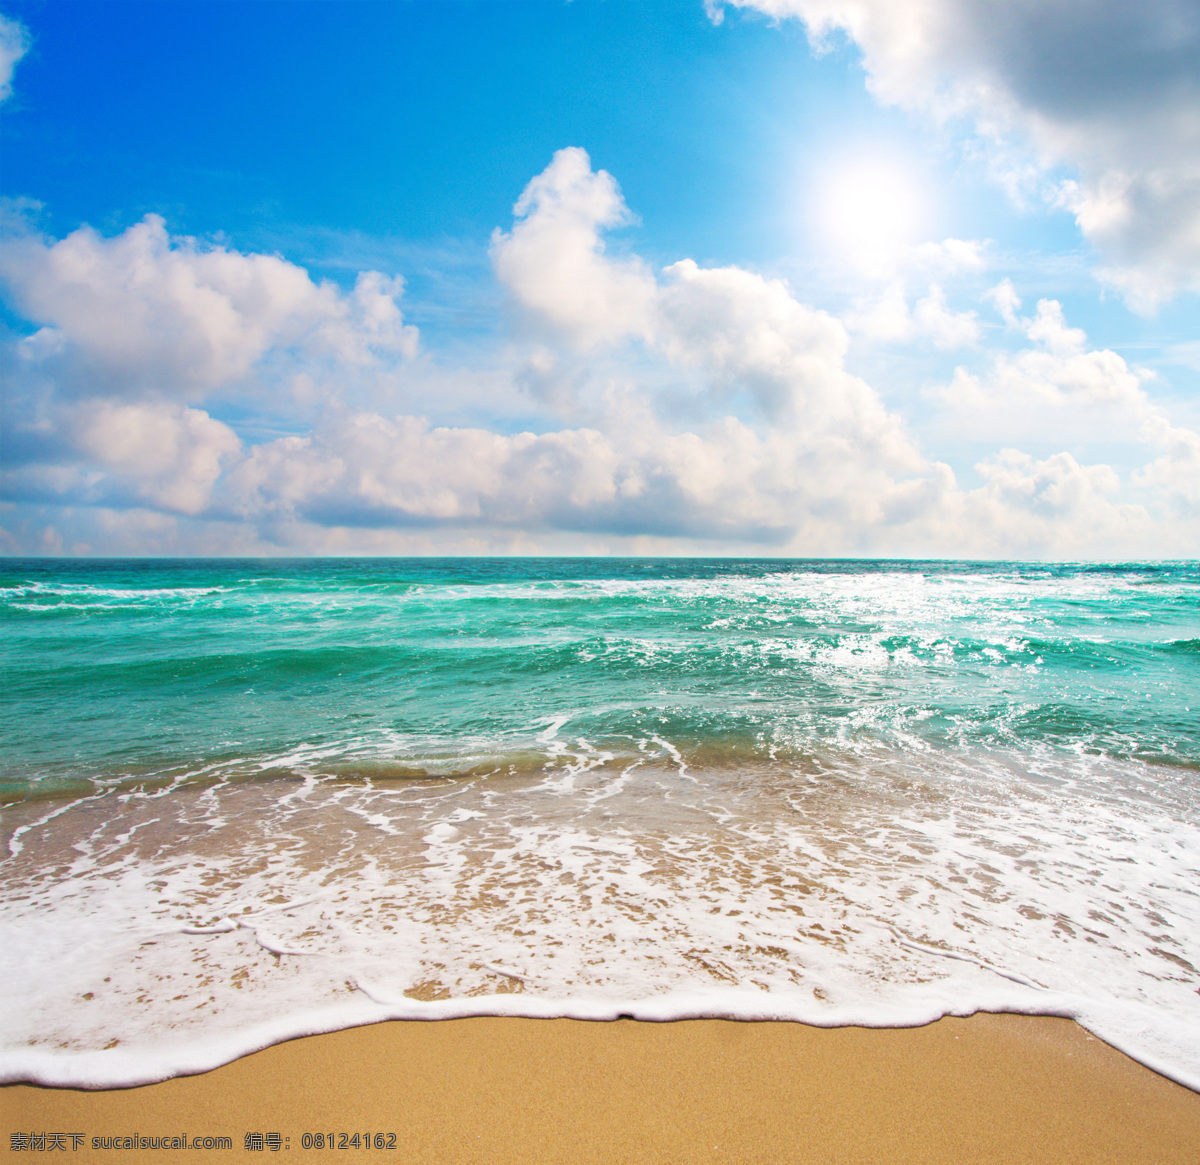 唯美 大海 海浪 沙滩 蓝天 白云 海边 蔚蓝 海水 海滩 波浪 阳光 海岸 海滨 蓝天白云 云朵 大海背景 海天一色 美景 碧海蓝天 自然风景 自然景观